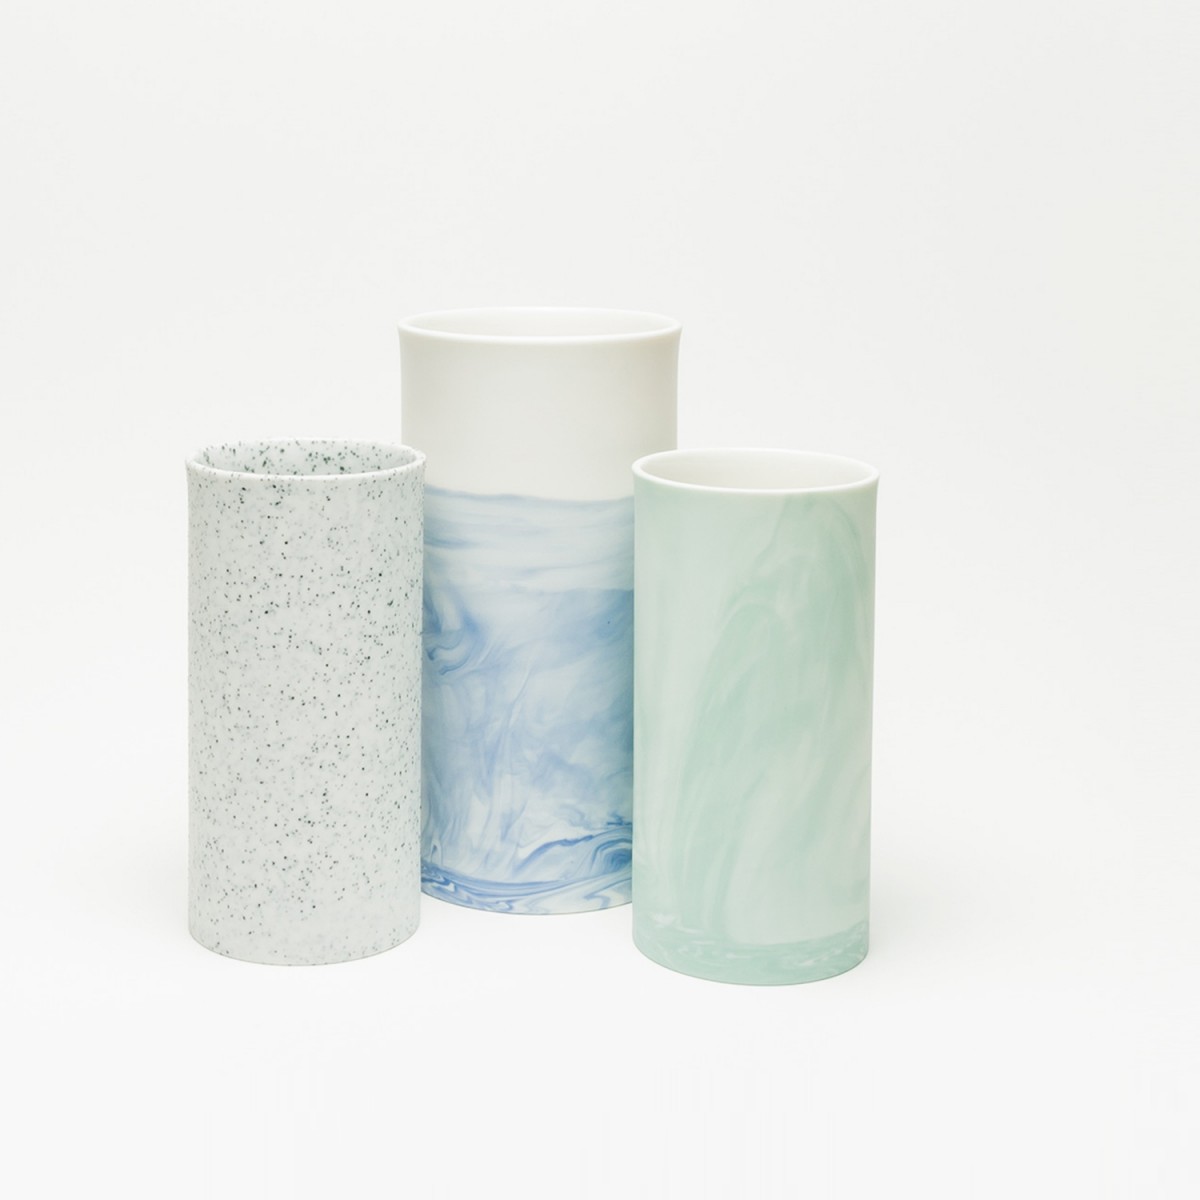 Rimma Tchilingarian – The Tactile  Vase – Handgemachtes Porzellan, weiß – mit schwarzen Glausurpunkten